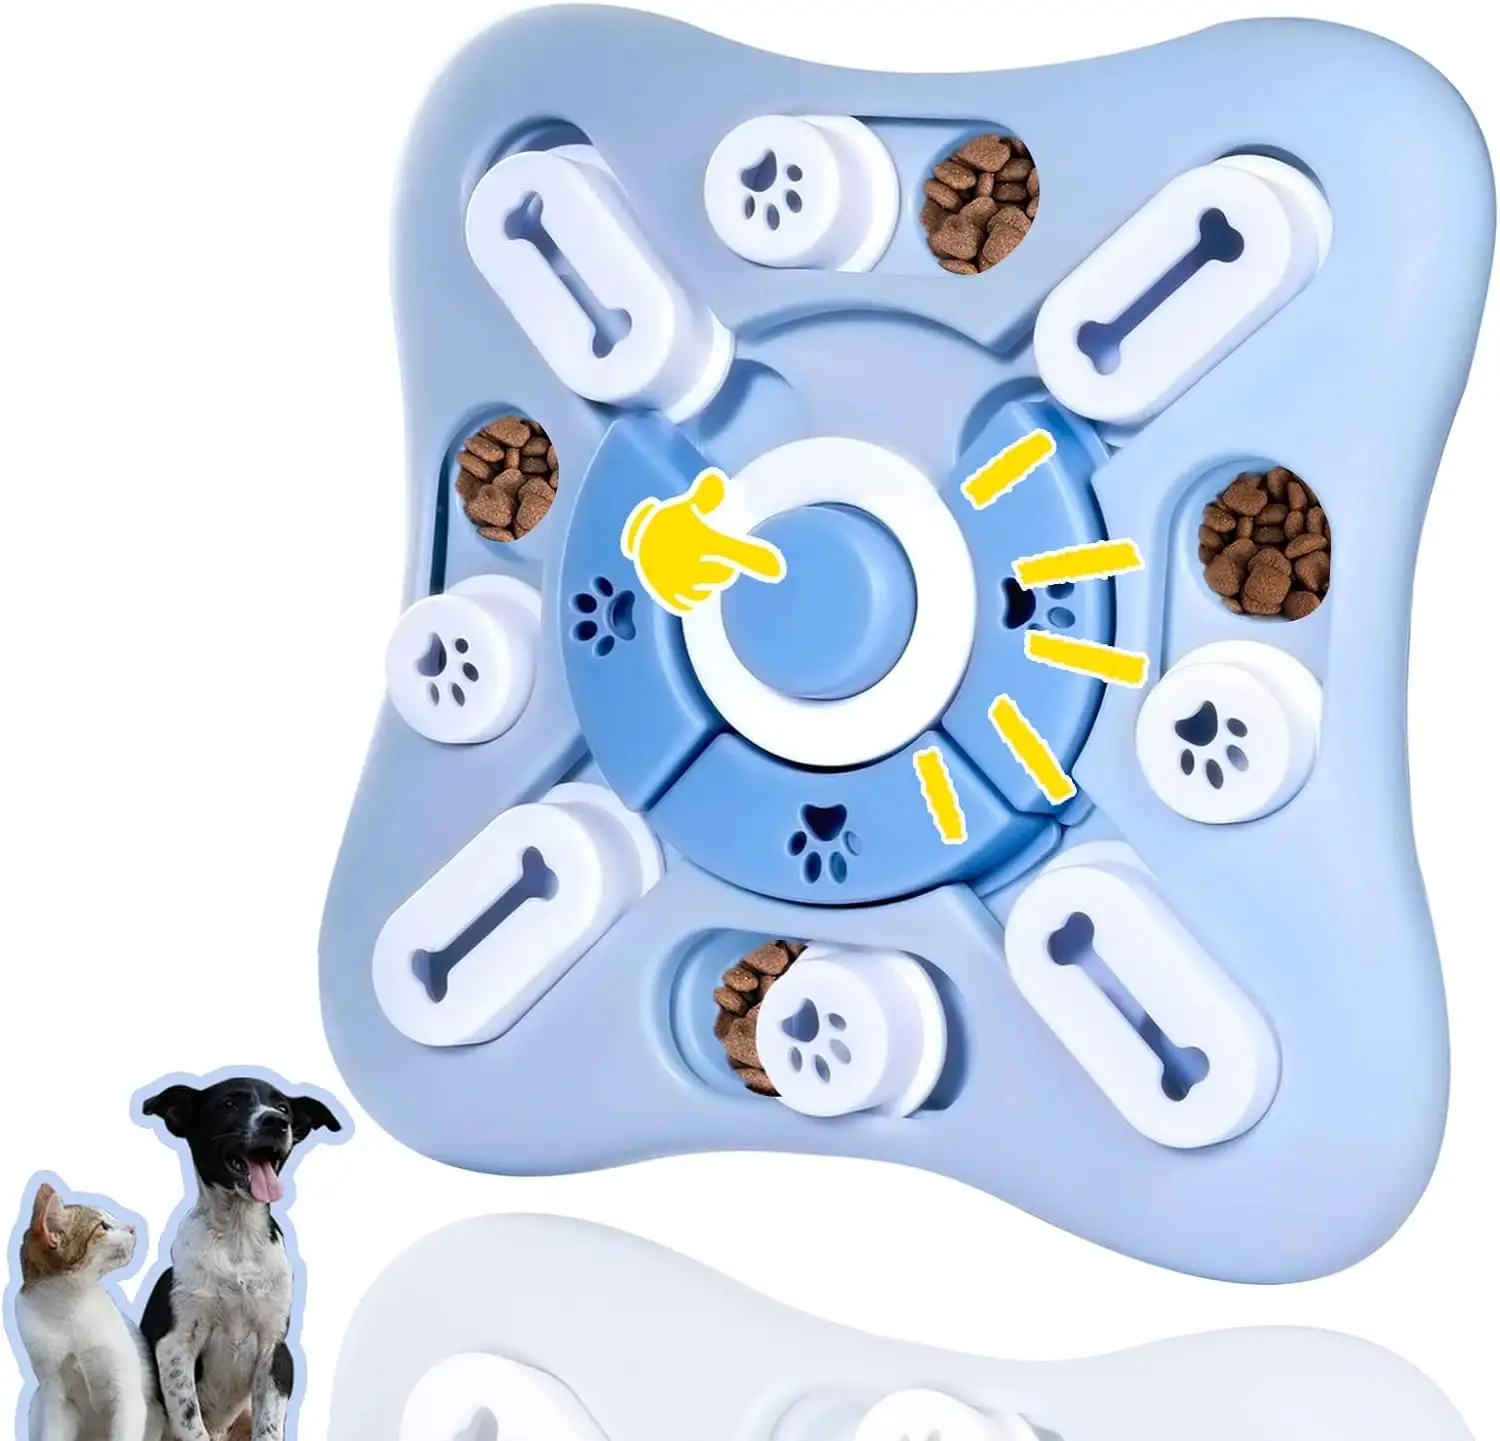 Giocattoli Puzzle per cani che trattano perfettamente dispensando giocattoli di arricchimento per cani per allenamento IQ e stimolazione cerebrale interattivi mentalmente